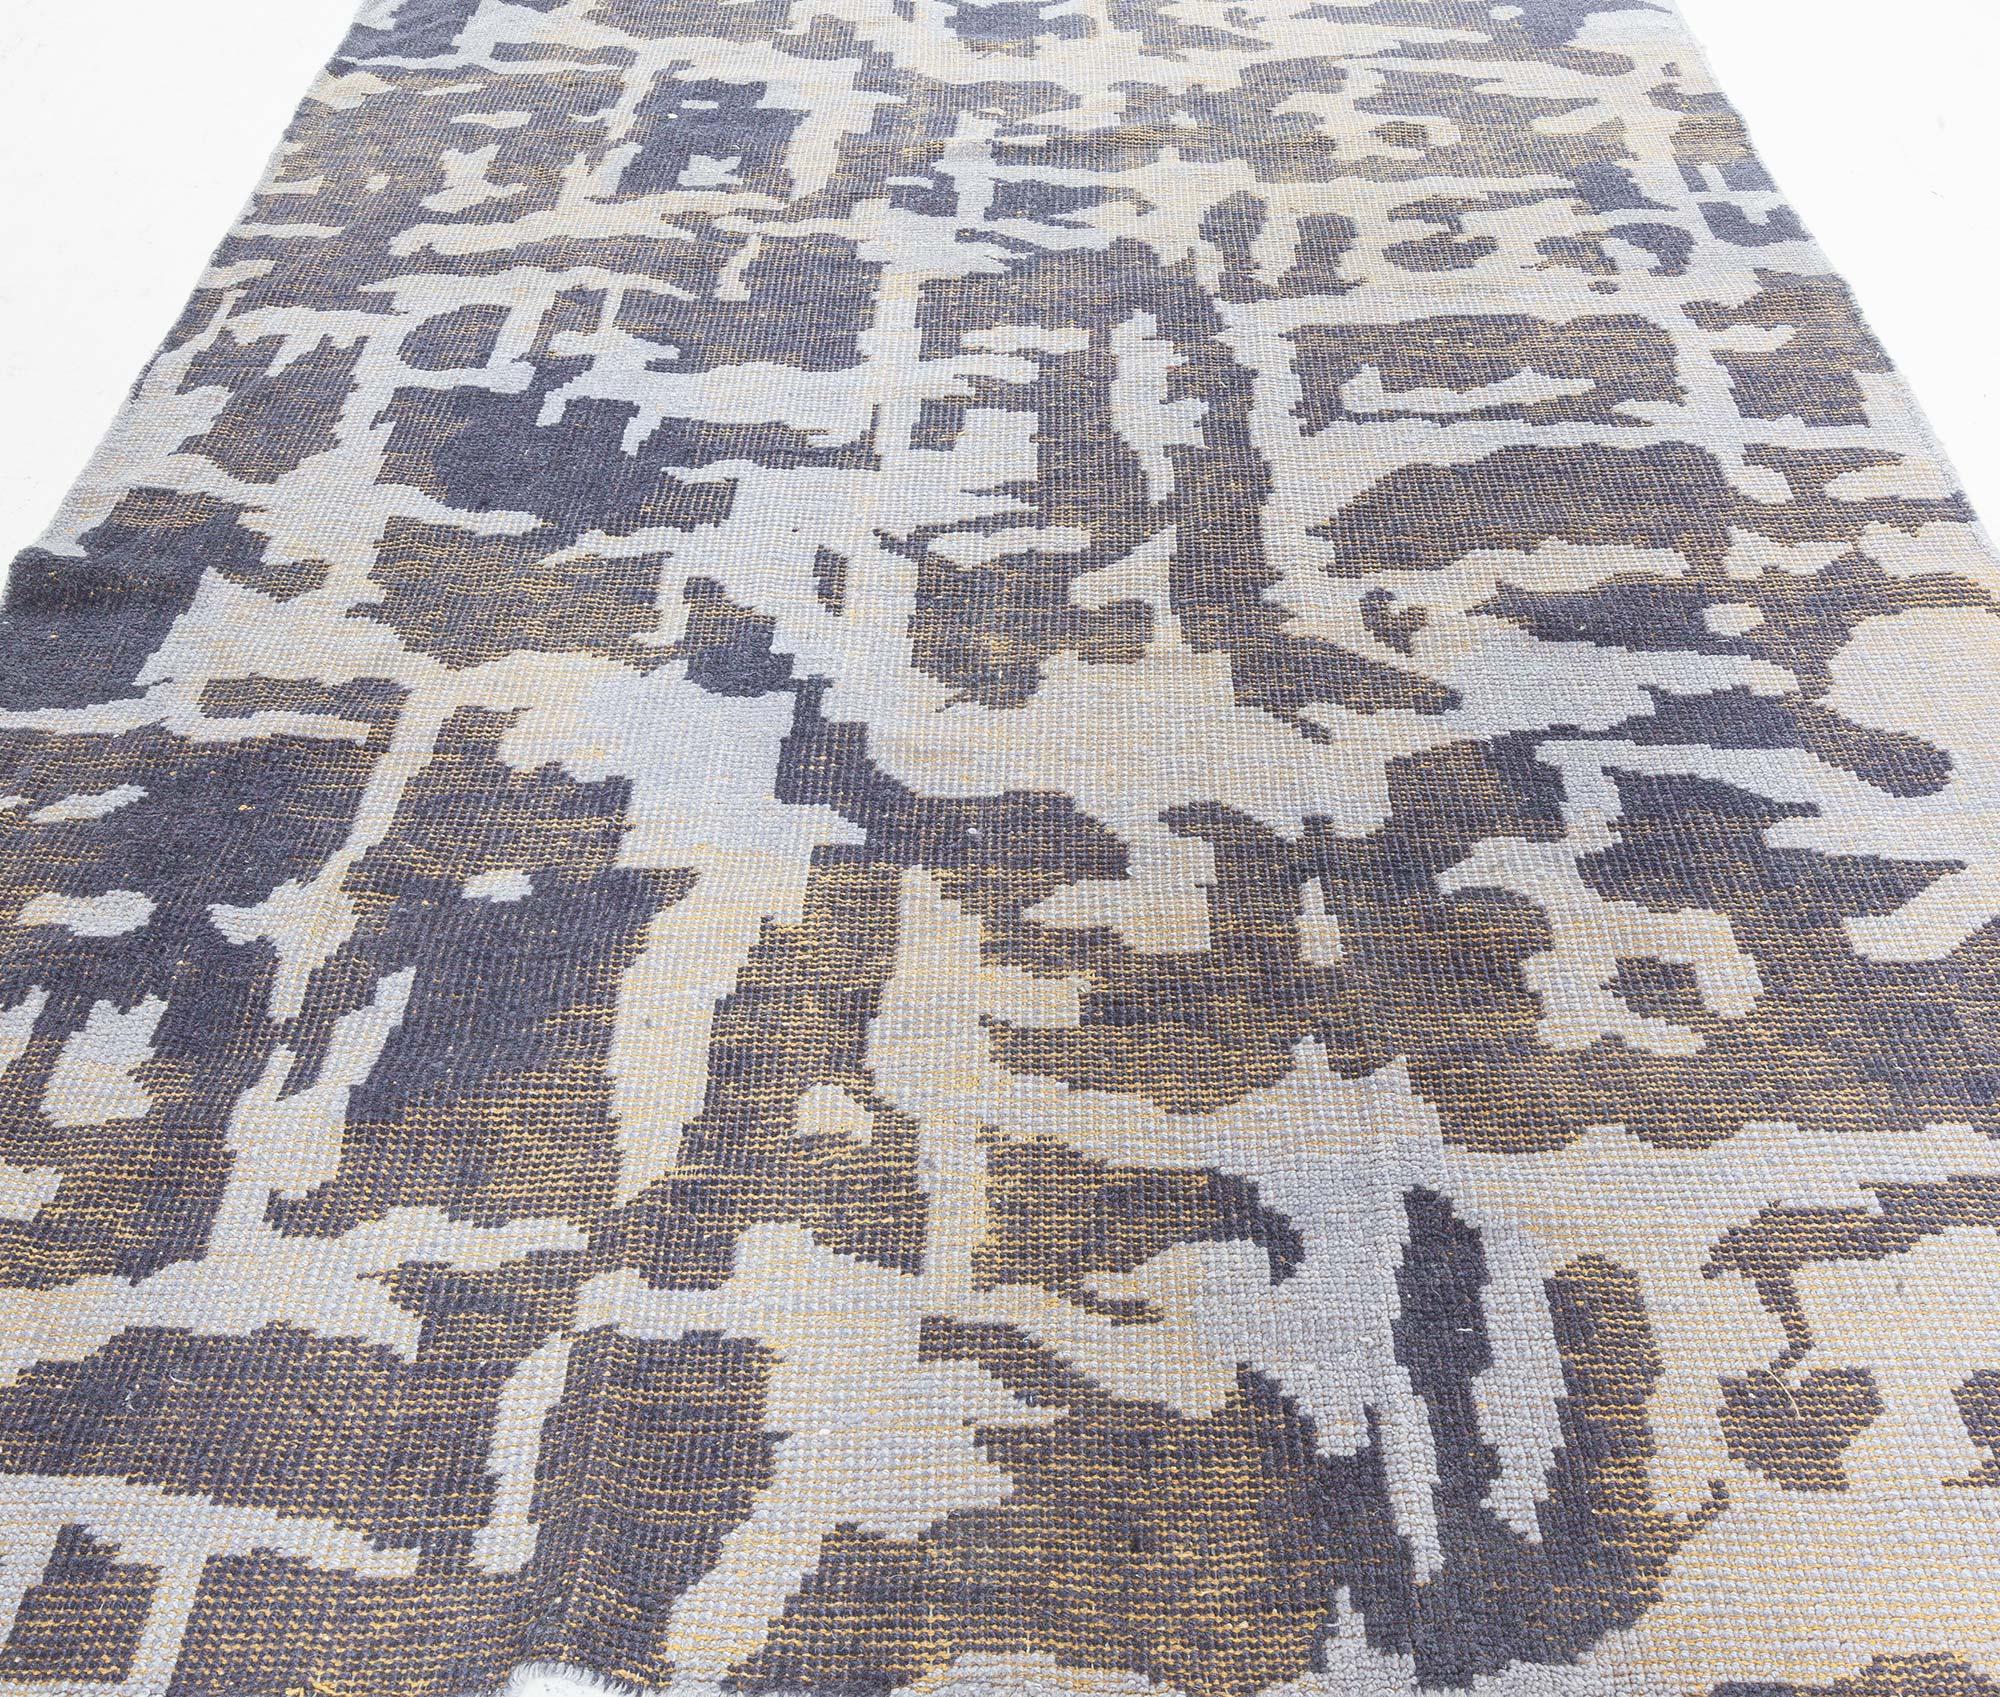 Zeitgenössischer abstrakter blau-lila Flachgewebe-Teppich
Größe: 5'7